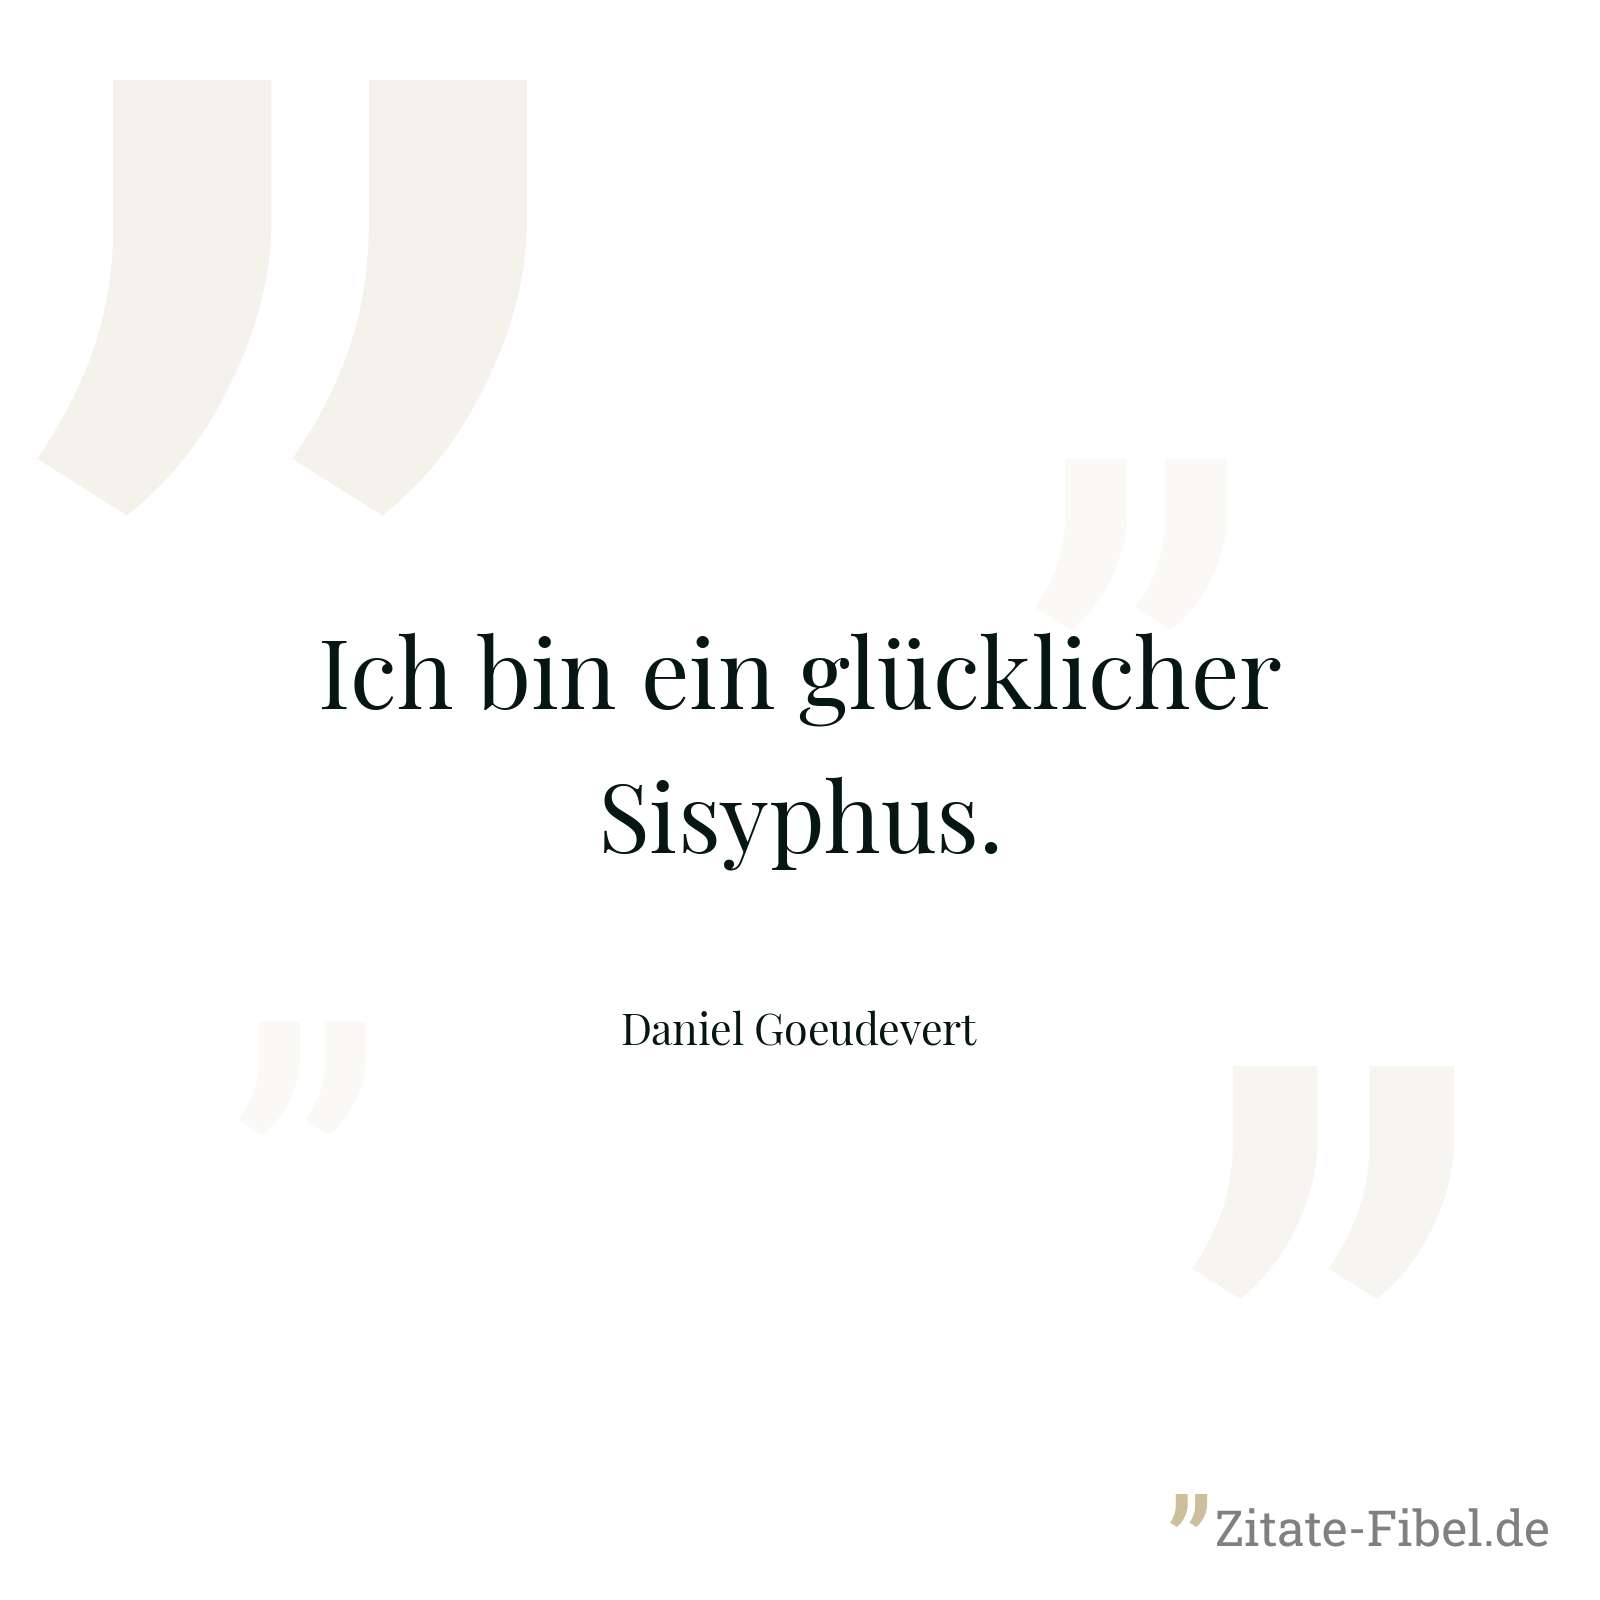 Ich bin ein glücklicher Sisyphus. - Daniel Goeudevert